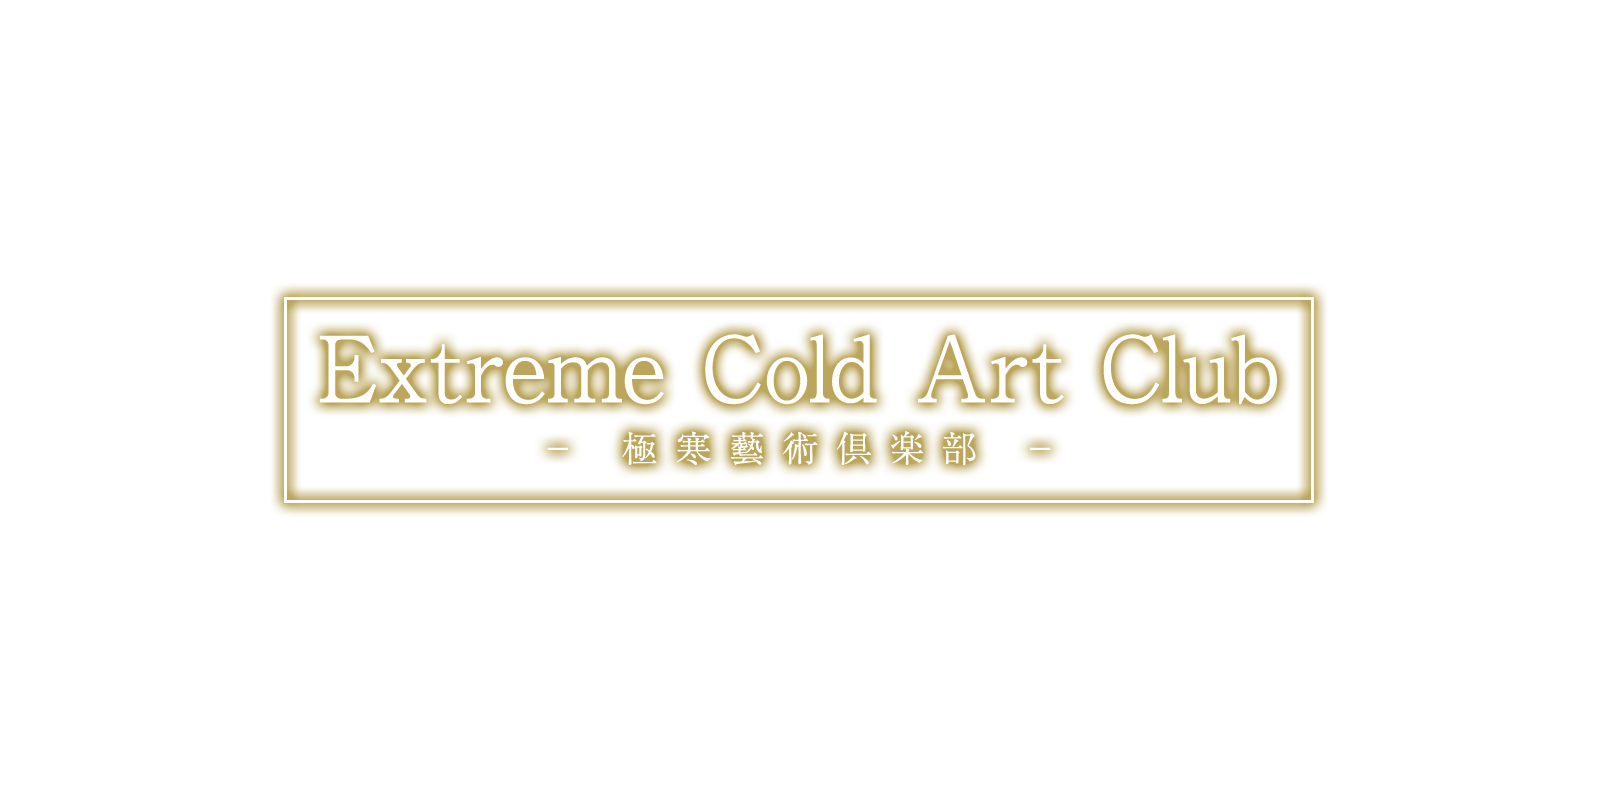 Extreme Cold Art Club / 極寒藝術倶楽部